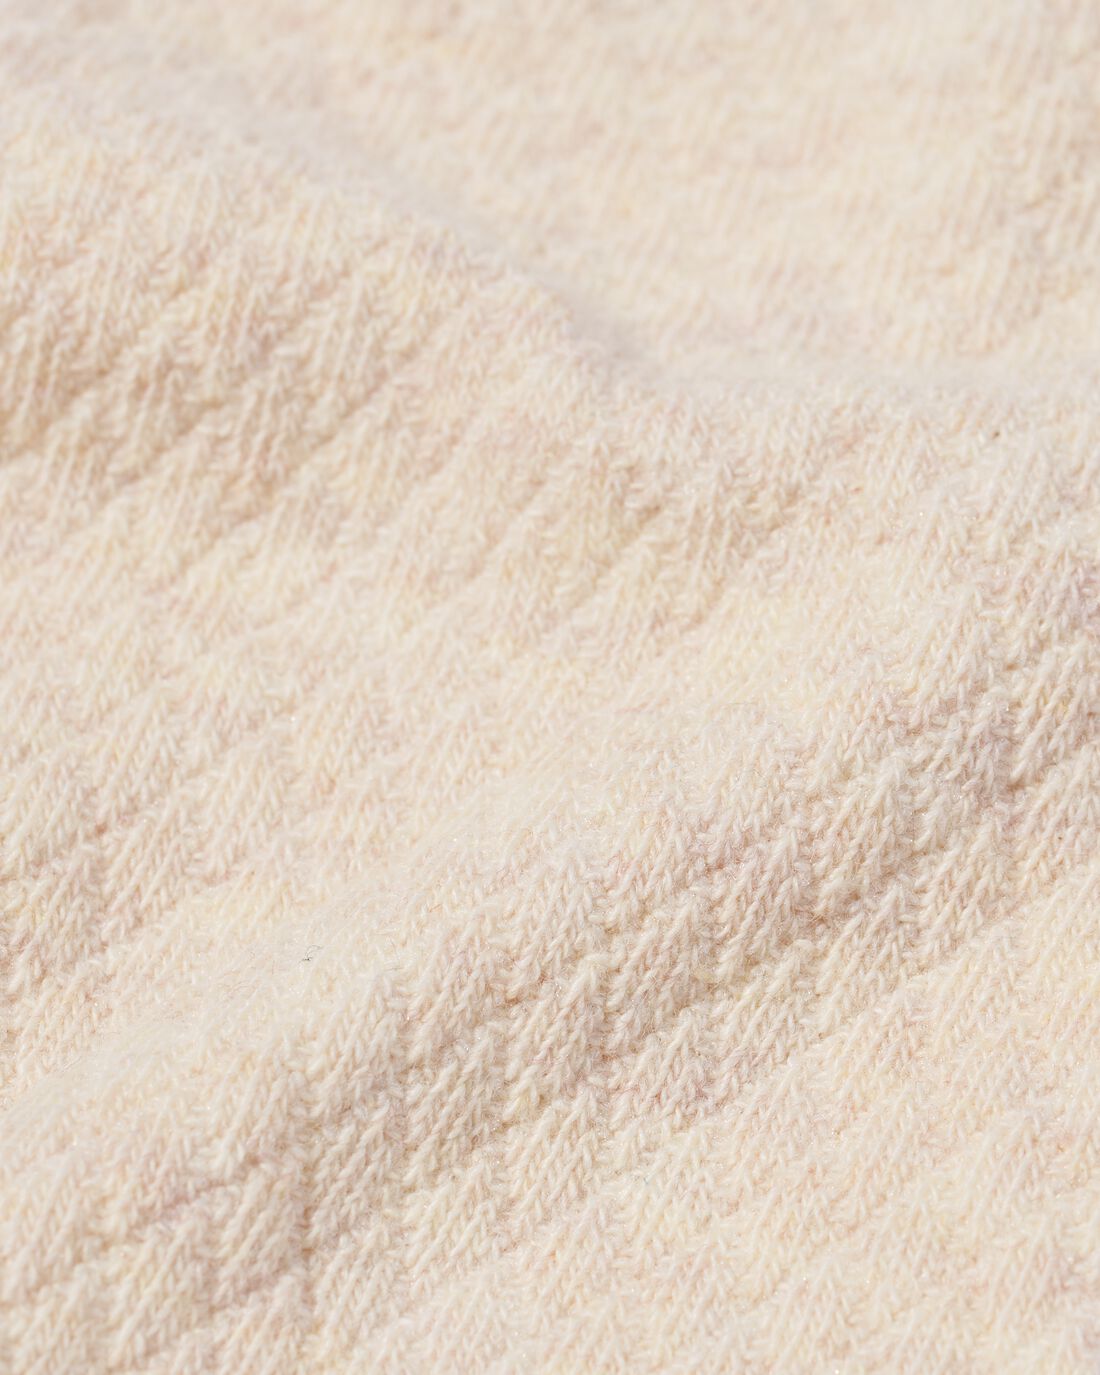 HEMA Heren Sokken Met Katoen Textuur Beige (beige)